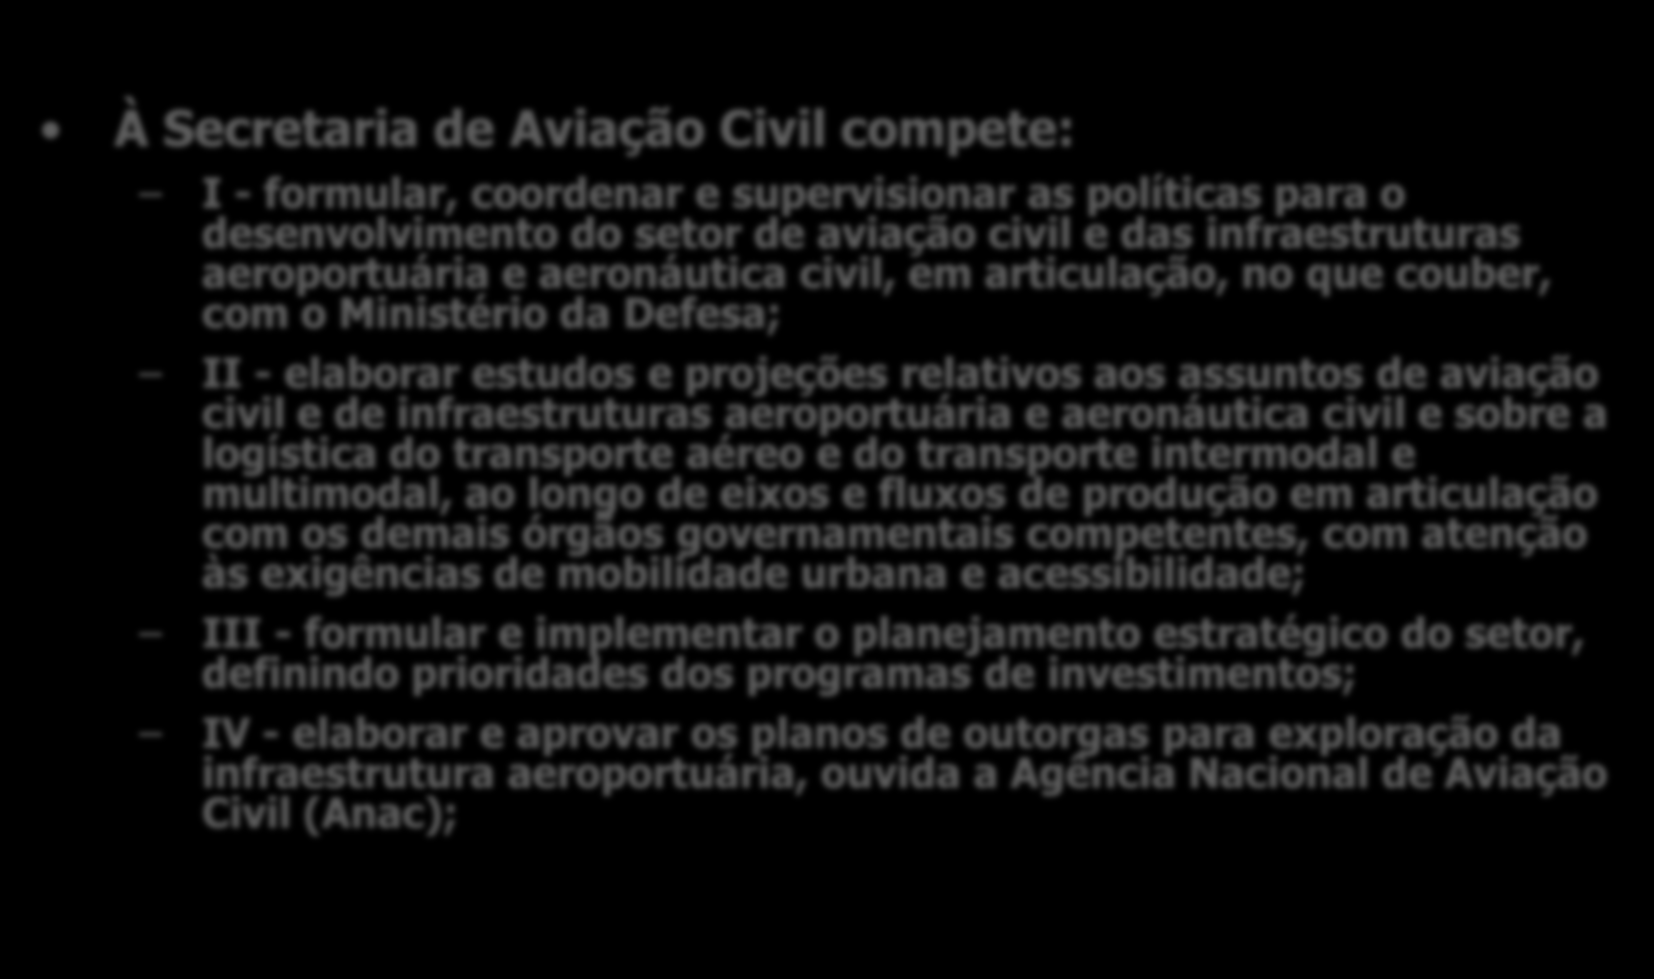 15 À Secretaria de Aviação Civil compete: I - formular, coordenar e supervisionar as políticas para o desenvolvimento do setor de aviação civil e das infraestruturas aeroportuária e aeronáutica